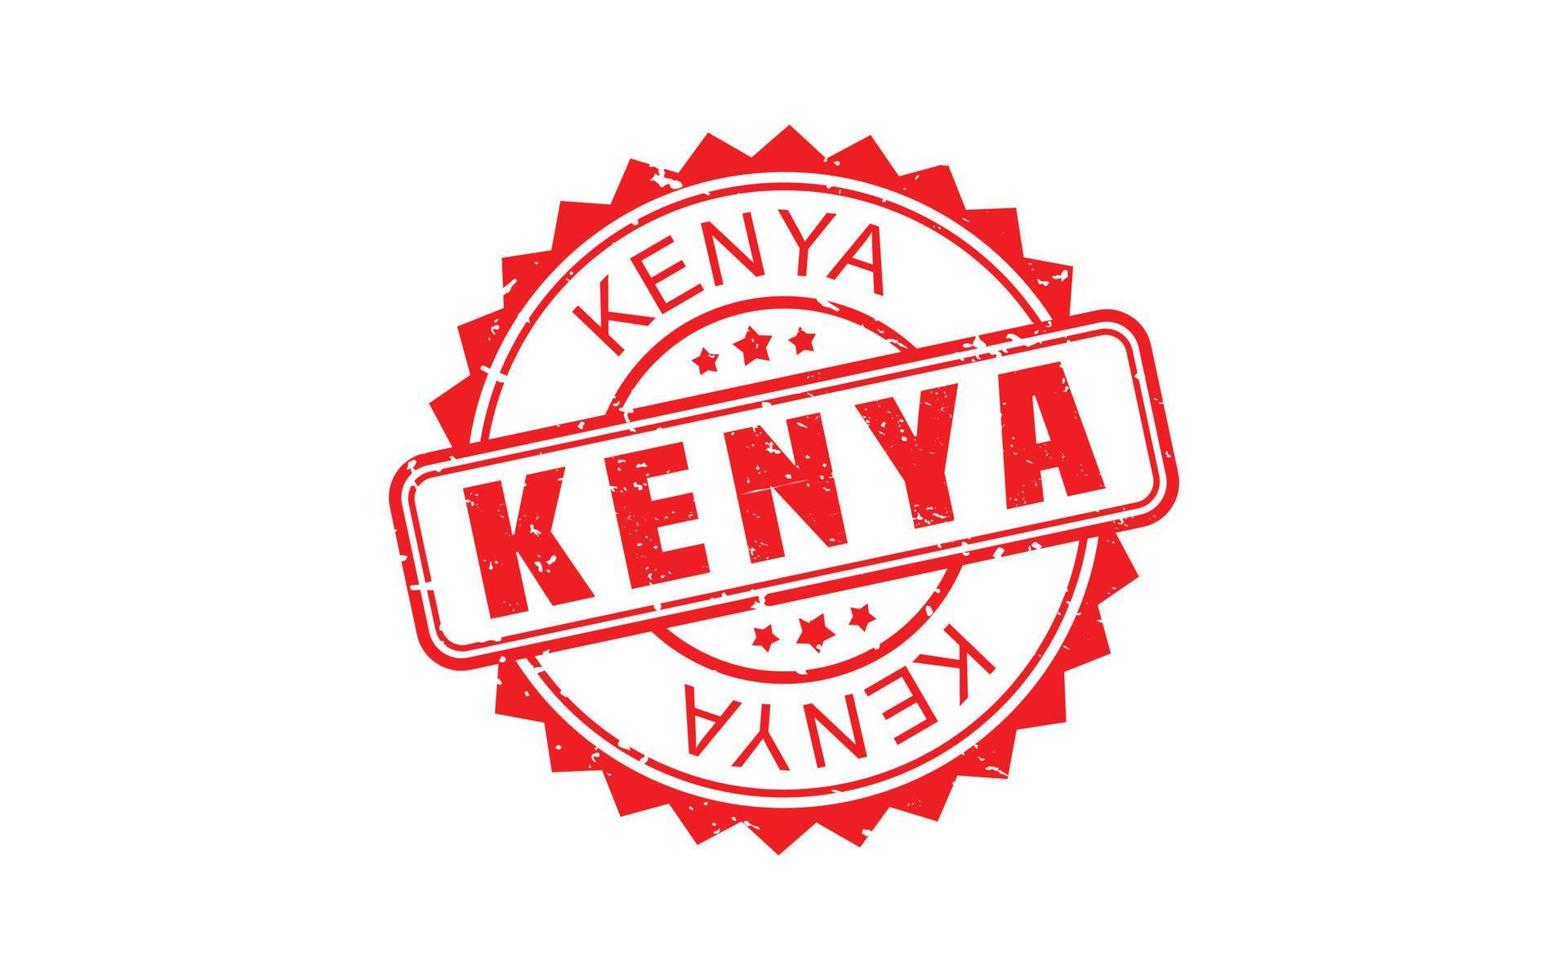 Kenia-Stempelgummi mit Grunge-Stil auf weißem Hintergrund vektor